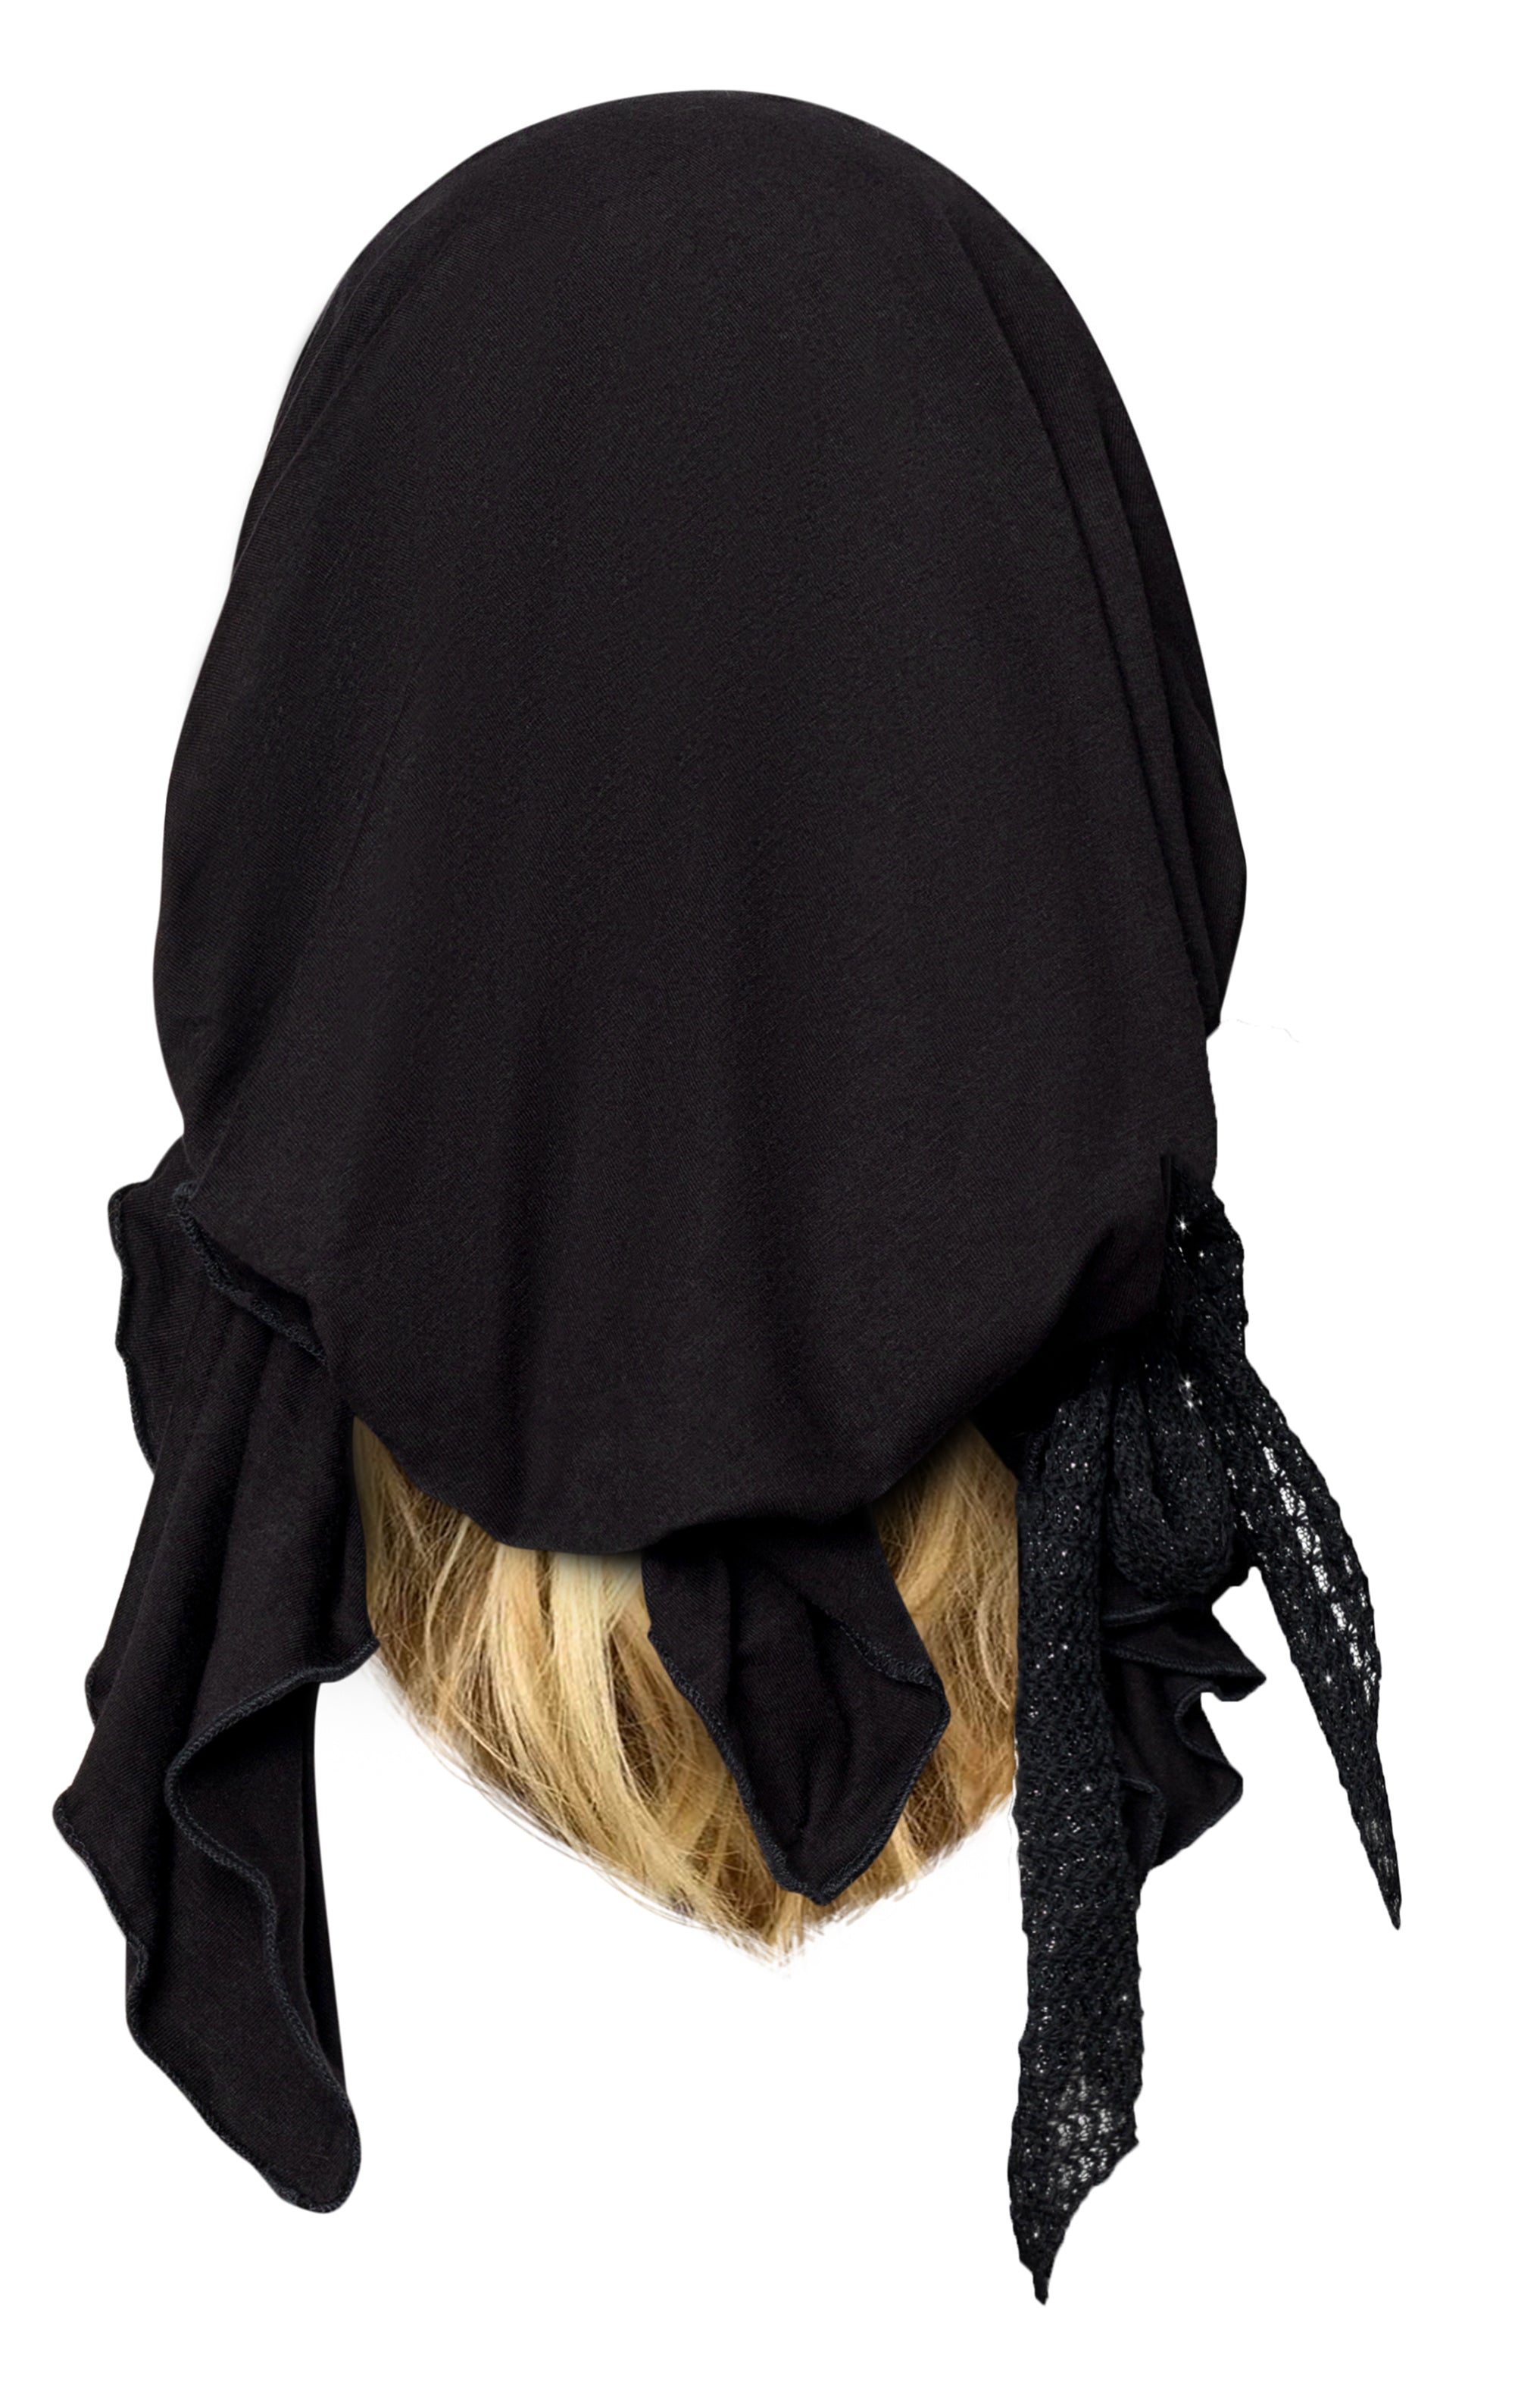 Black pre tied headscarf sparkly knit wrap